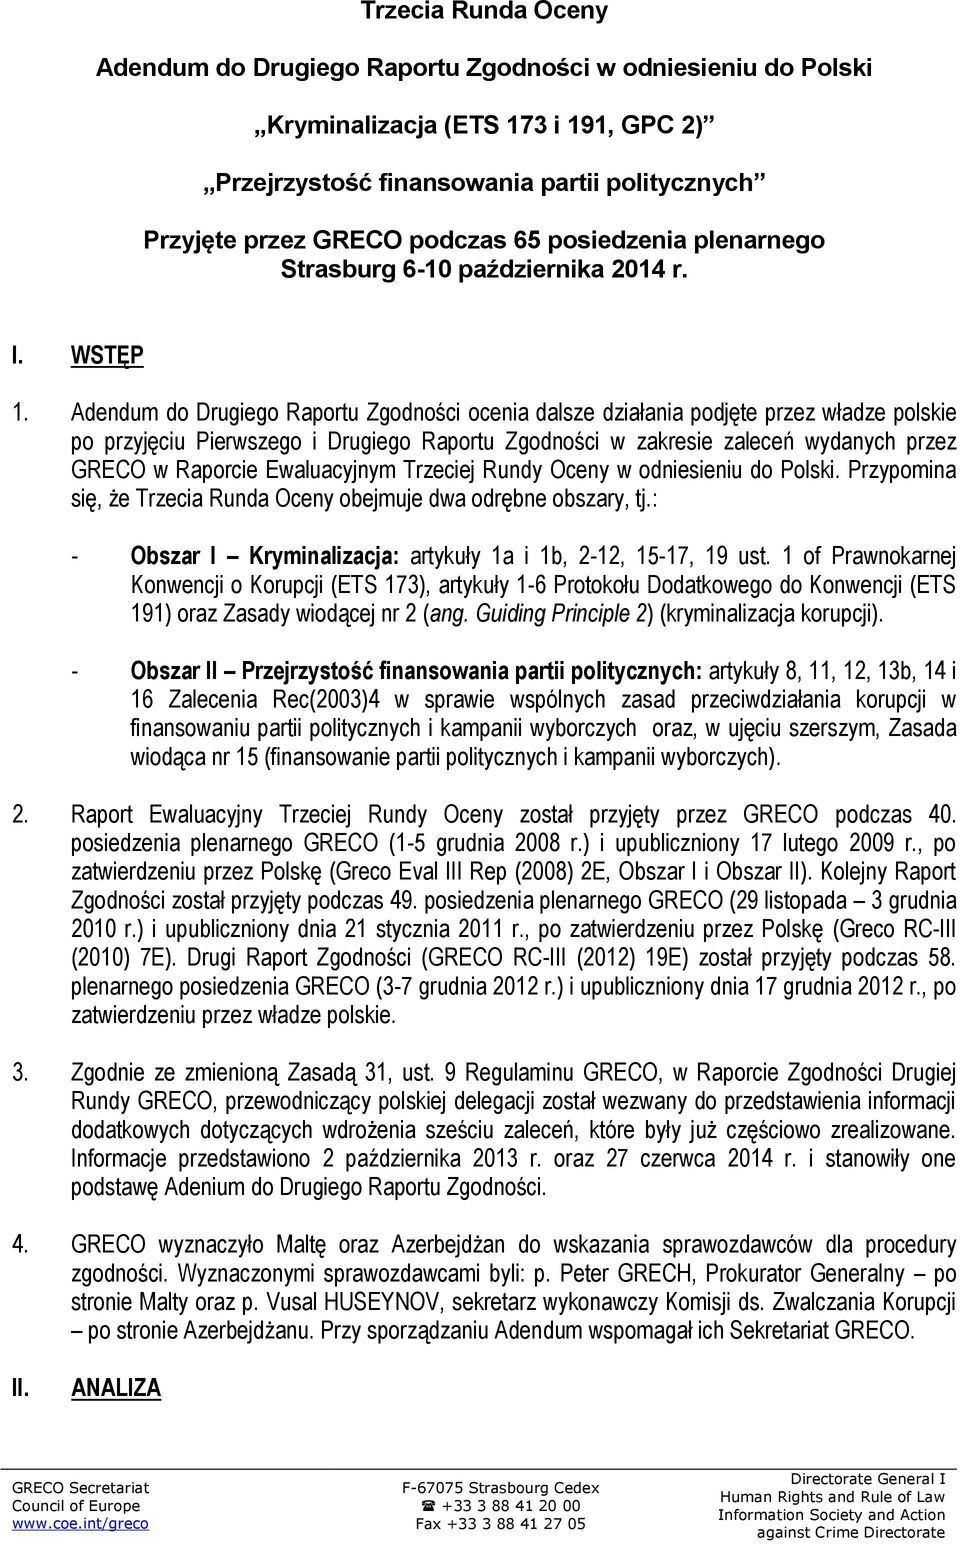 Adendum do Drugiego Raportu Zgodności ocenia dalsze działania podjęte przez władze polskie po przyjęciu Pierwszego i Drugiego Raportu Zgodności w zakresie zaleceń wydanych przez GRECO w Raporcie